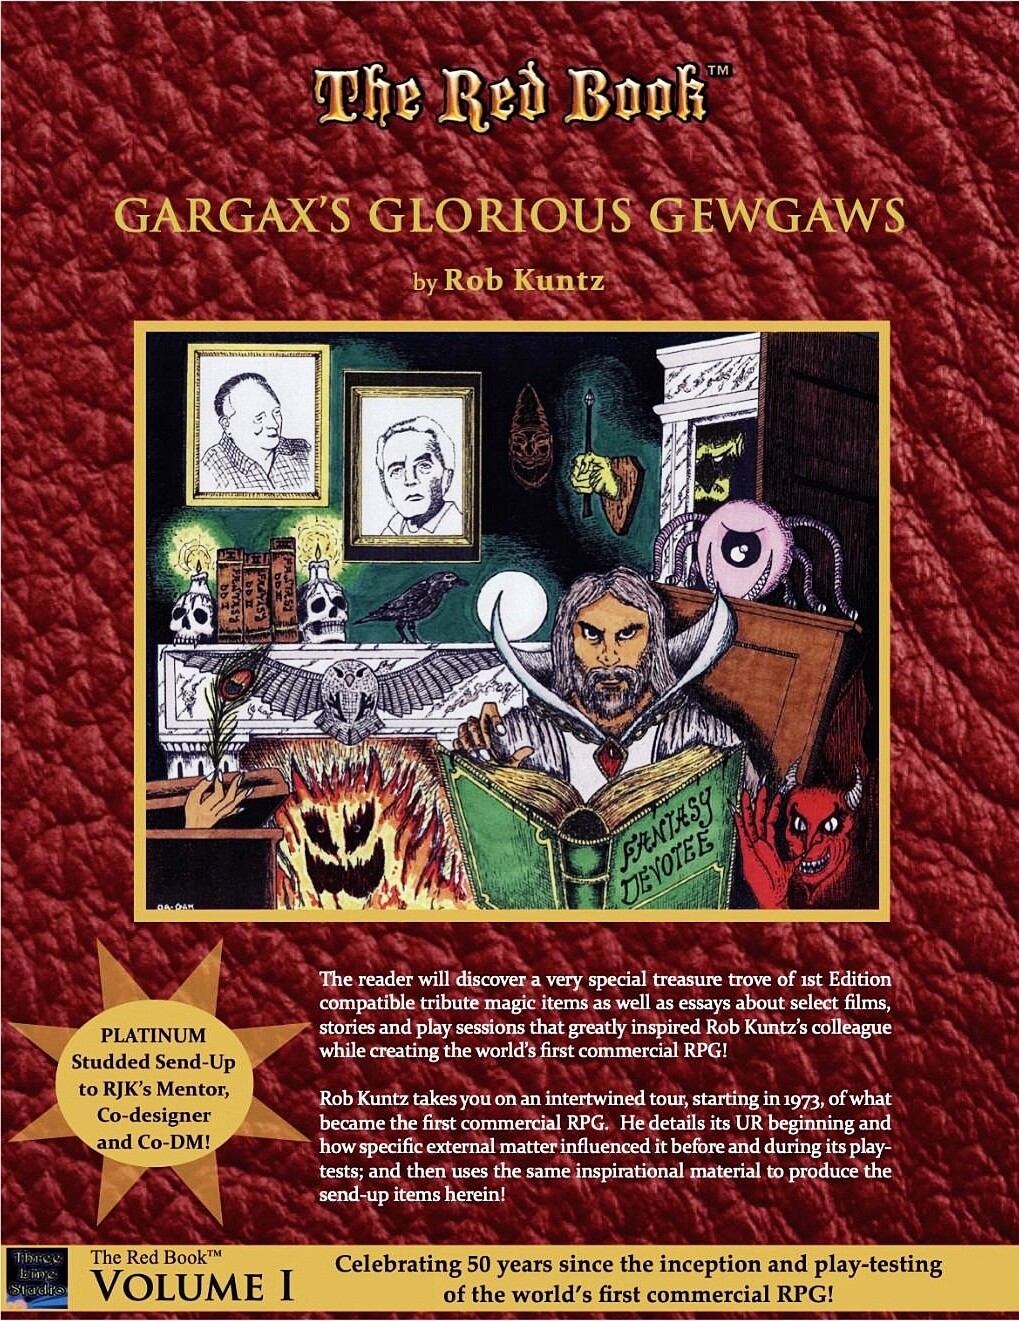 GARGAX'S GLORIOUS GEWGAWS